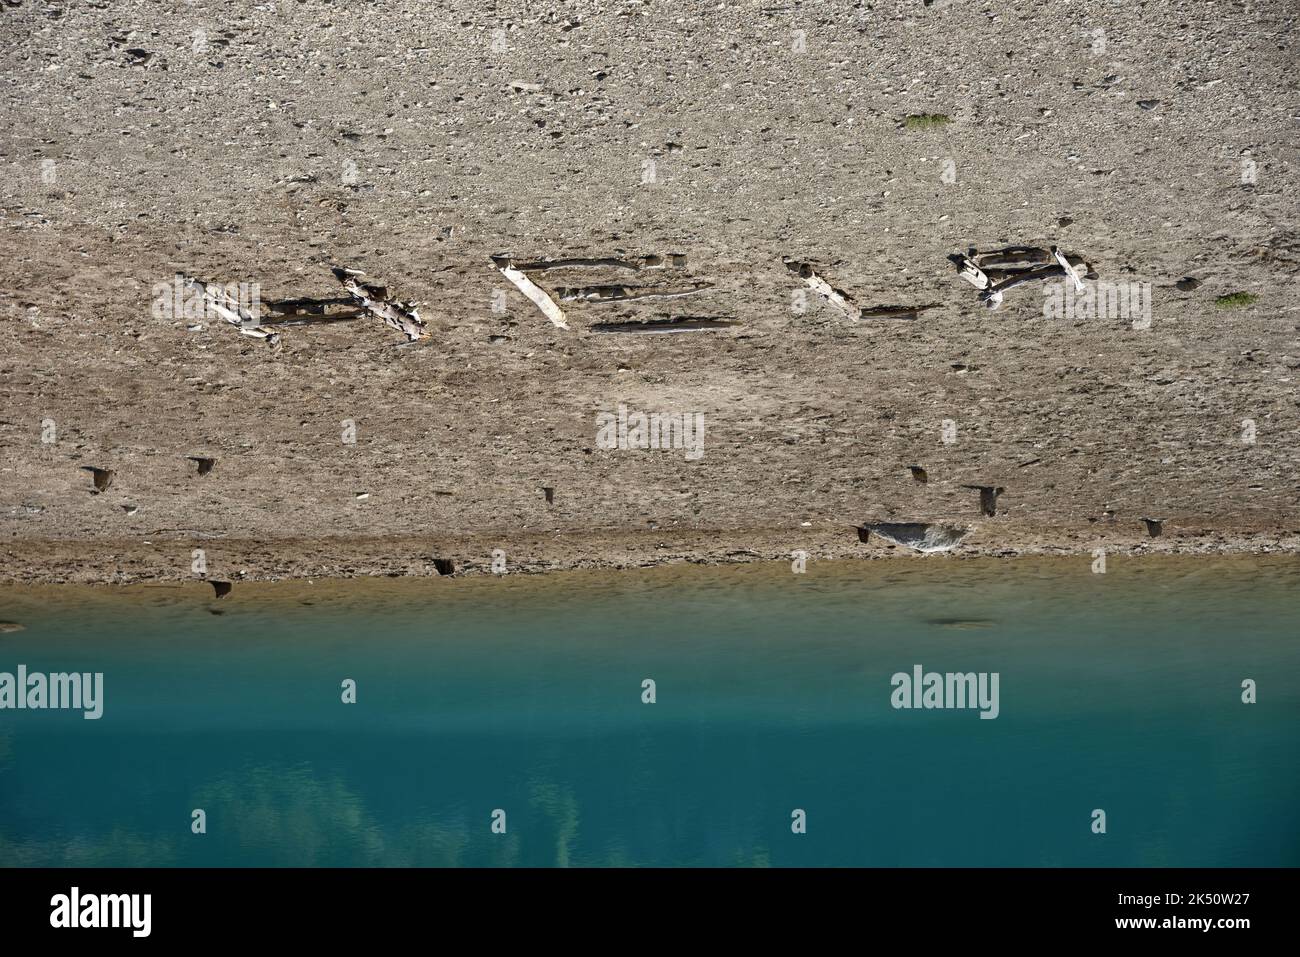 Ayuda escrita en Mud en Lakeside de Lago Encogedor debido al Cambio Climático, Crisis Ambiental, Sequía y Clima Extremo; Salvemos Nuestro Planeta. Foto de stock